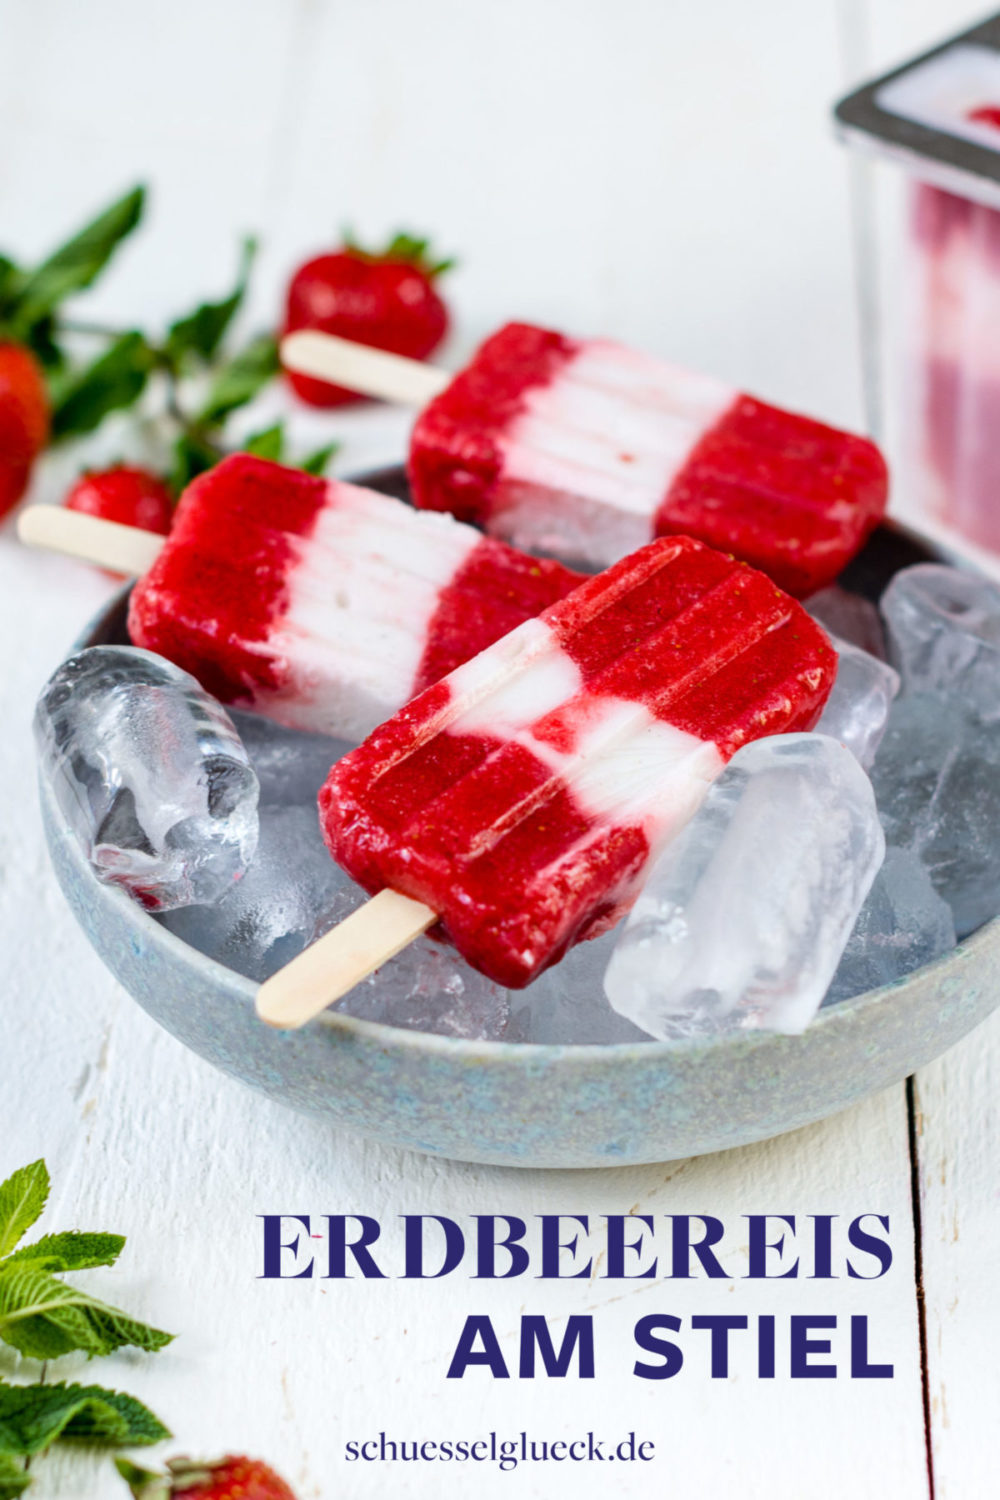 Gesunde Erdbeer Joghurt Popsicles – selbstgemachtes Eis am Stiel zum verlieben!